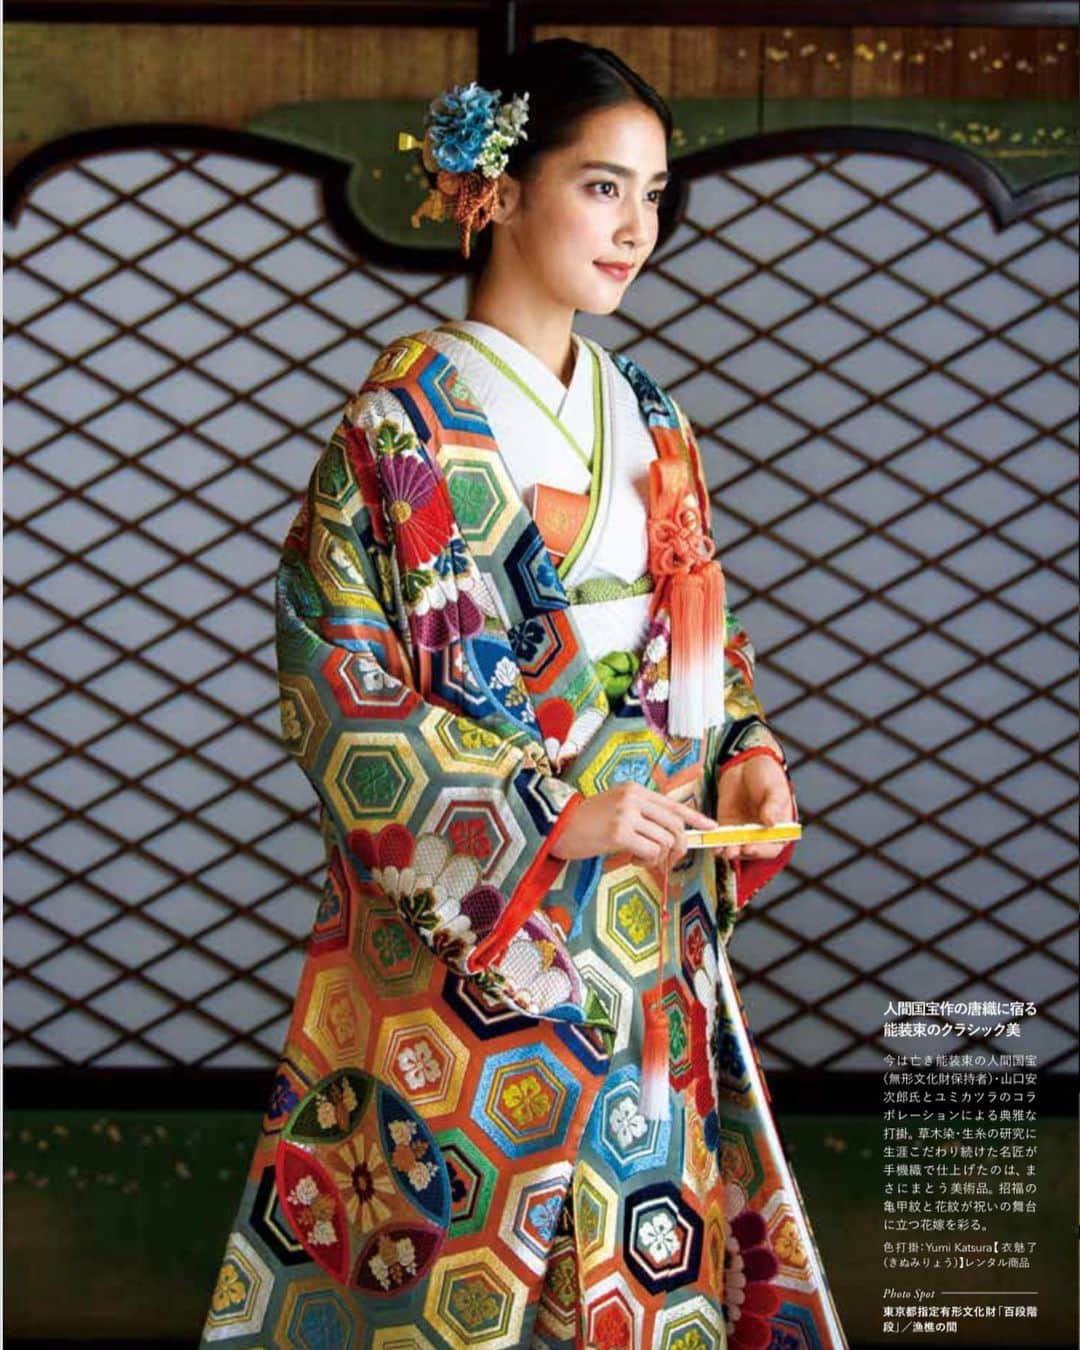 yumikatsuraのインスタグラム：「* ﻿﻿﻿﻿﻿﻿﻿ 人間国宝の唐織が光るクラシカルスタイル♡﻿ お祝いの席にエレガントな彩りを。﻿ ﻿﻿ 8月5日発売✨﻿﻿﻿﻿ 「日本の結婚式32号」にYumi Katsura Kimono Collectionが特別付録として紹介されています。﻿﻿﻿﻿ ____________________________﻿﻿﻿﻿﻿﻿﻿﻿﻿﻿﻿﻿﻿ ﻿ 今は亡き能装束の人間国宝 (無形文化財保持者)・山口安 次郎氏とユミカツラのコラ ボレーションによる典雅な打掛。草木染・生糸の研究に 生涯こだわり続けた名匠が 手機織で仕上げたのは、まさにまとう美術品。招福の亀甲紋と花紋が祝いの舞台に立つ花嫁を彩る。﻿ ﻿ (「日本の結婚式32号」より)﻿﻿ ____________________________﻿﻿﻿﻿﻿﻿﻿﻿﻿﻿﻿﻿﻿ ﻿﻿ 毎週火曜日18:30〜﻿ デザイナー桂由美によるインスタライブ開催中💐﻿ 是非ご覧くださいね✨﻿ .﻿﻿﻿﻿﻿﻿﻿﻿﻿﻿﻿﻿﻿﻿﻿﻿﻿﻿﻿﻿﻿﻿﻿﻿﻿ ﻿﻿﻿﻿﻿﻿﻿ @yumikatsurajapan﻿﻿﻿﻿﻿﻿﻿﻿﻿﻿﻿ @yumikatsura_kimomo﻿﻿﻿﻿ @nihonno_kekkonshiki﻿﻿﻿﻿ #日本の結婚式 #神前式 #神社婚 #和装結婚式 #和婚をもっと盛り上げたい #和の結婚式 ﻿﻿﻿﻿ #前撮り#ロケーションフォト #ロケーションフォトウェディング #ロケフォト #プレ花嫁準備 #プレ花嫁2020 #フォトウエディング #ウエディングフォト #桂由美 #yumibrides #yumikatsura #プレ花嫁応援 #おしゃれ花嫁 #後撮り#大人花嫁 #和装前撮り #和装 #和装花嫁 #和装試着 #色打掛 #色打掛前撮り #色打掛試着 #色打掛選び #和婚花嫁さんと繋がりたい」